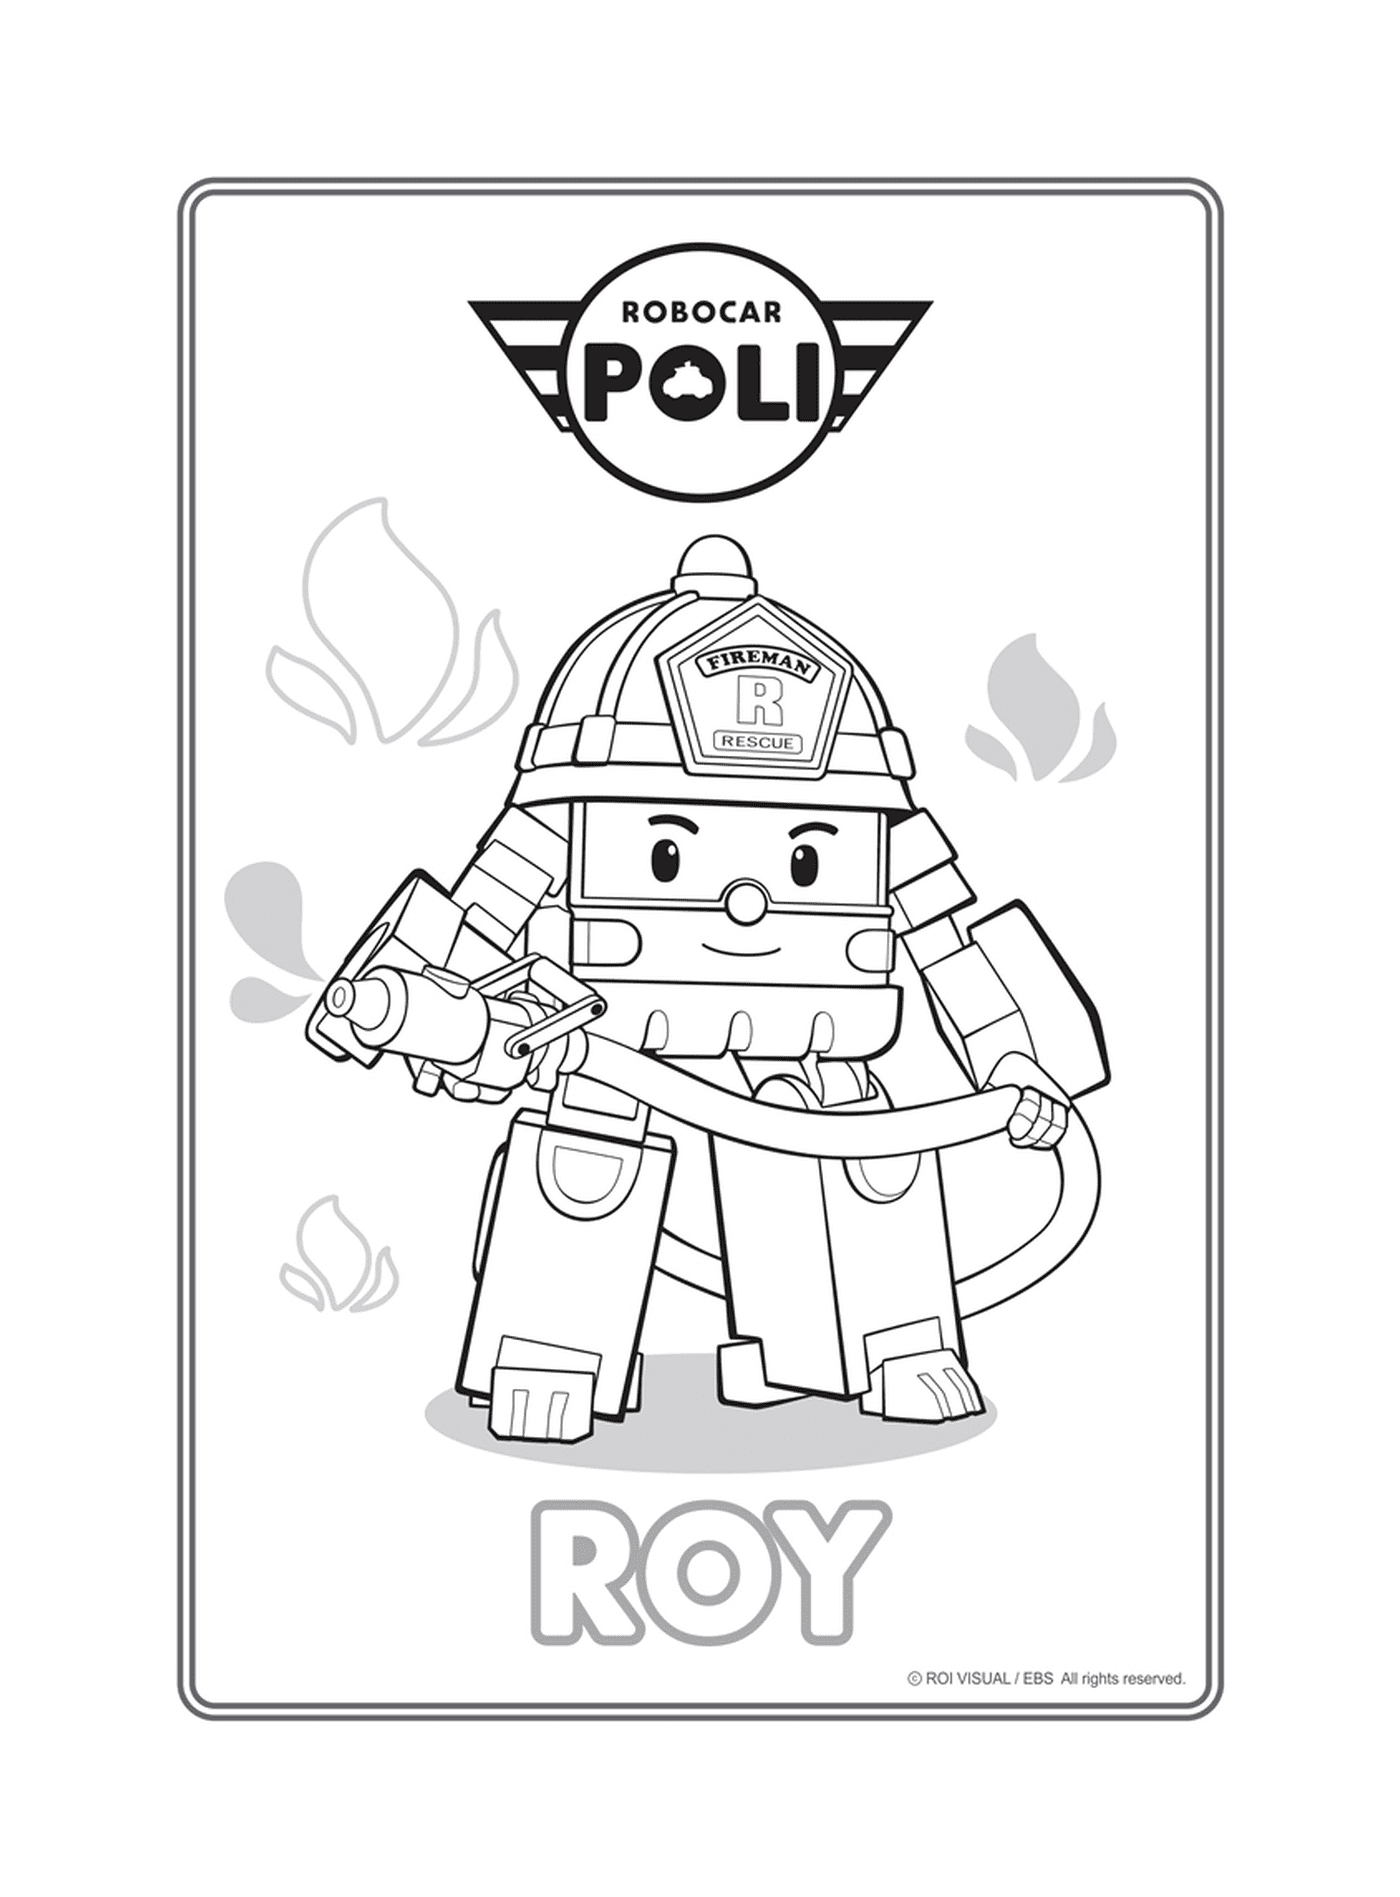  Roy, el bombero de Robocar Poli 